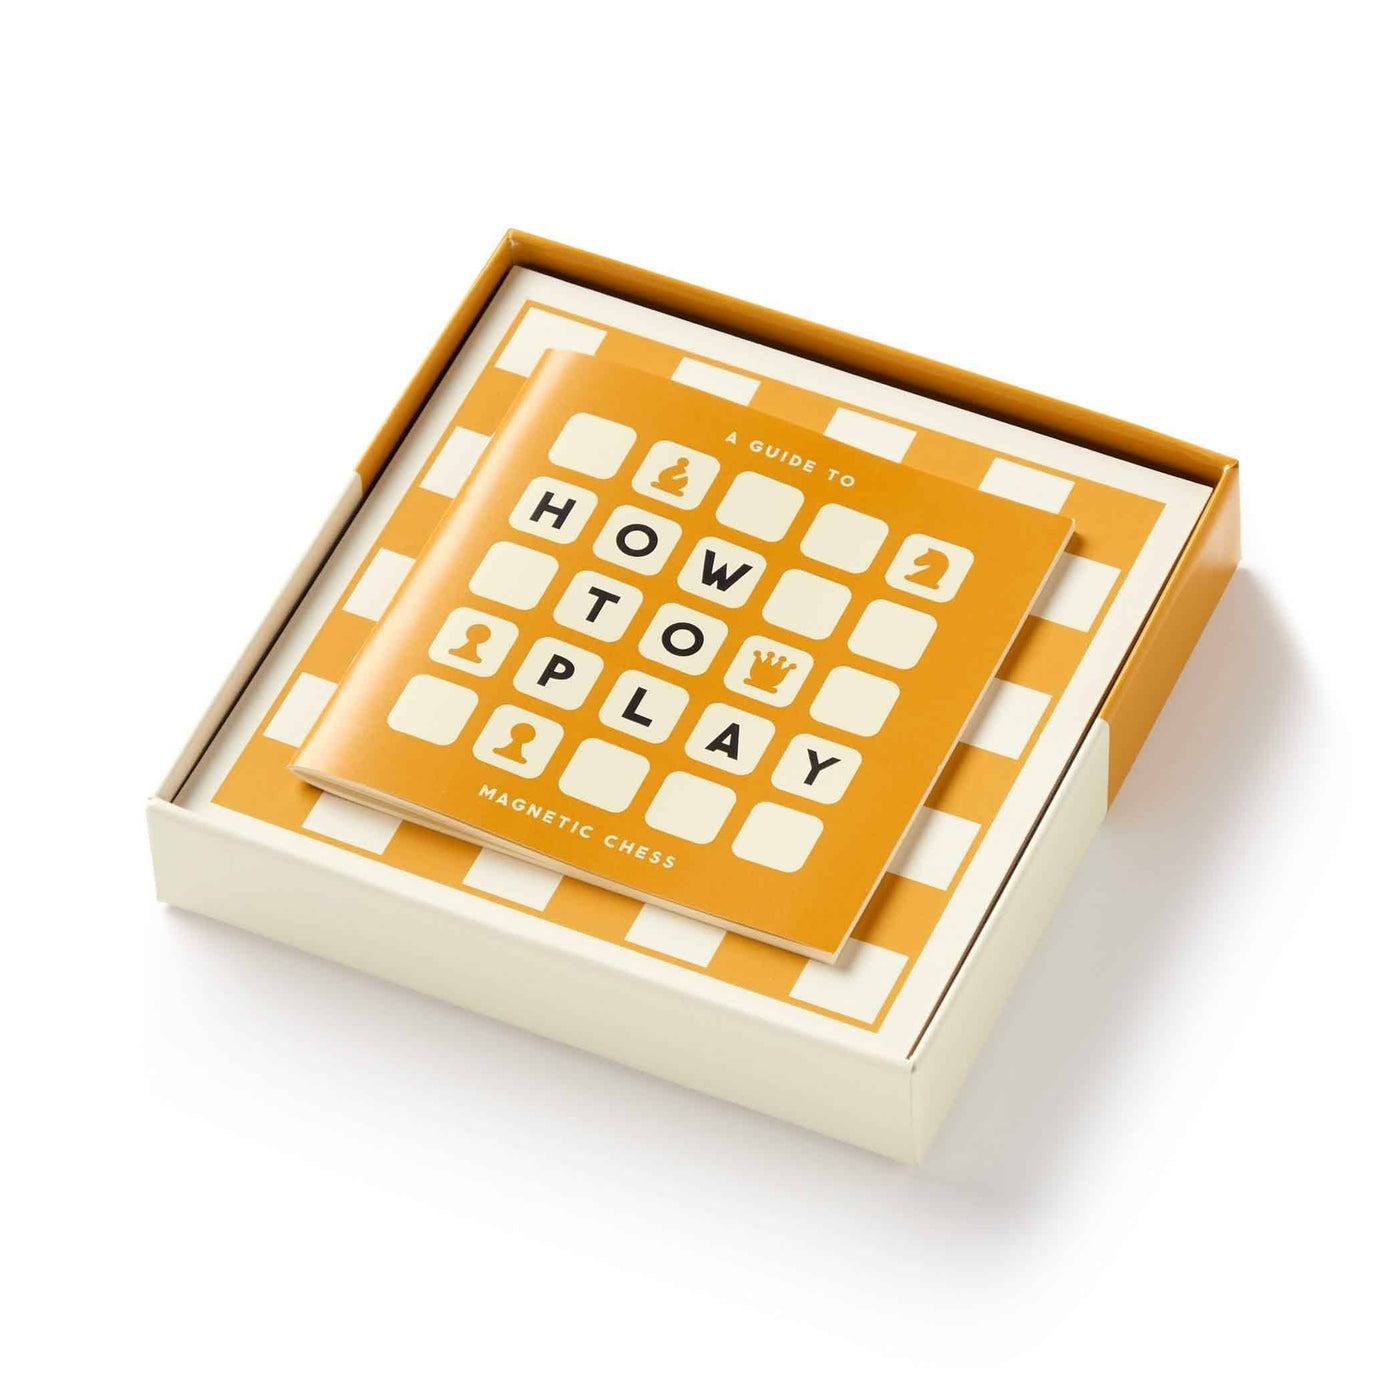 Jouez aux échecs à tout moment avec la version magnétique Brass Monkey. Le plateau fixable magnétiquement offre une expérience de jeu passive, idéale pour exprimer votre stratégie à votre rythme.